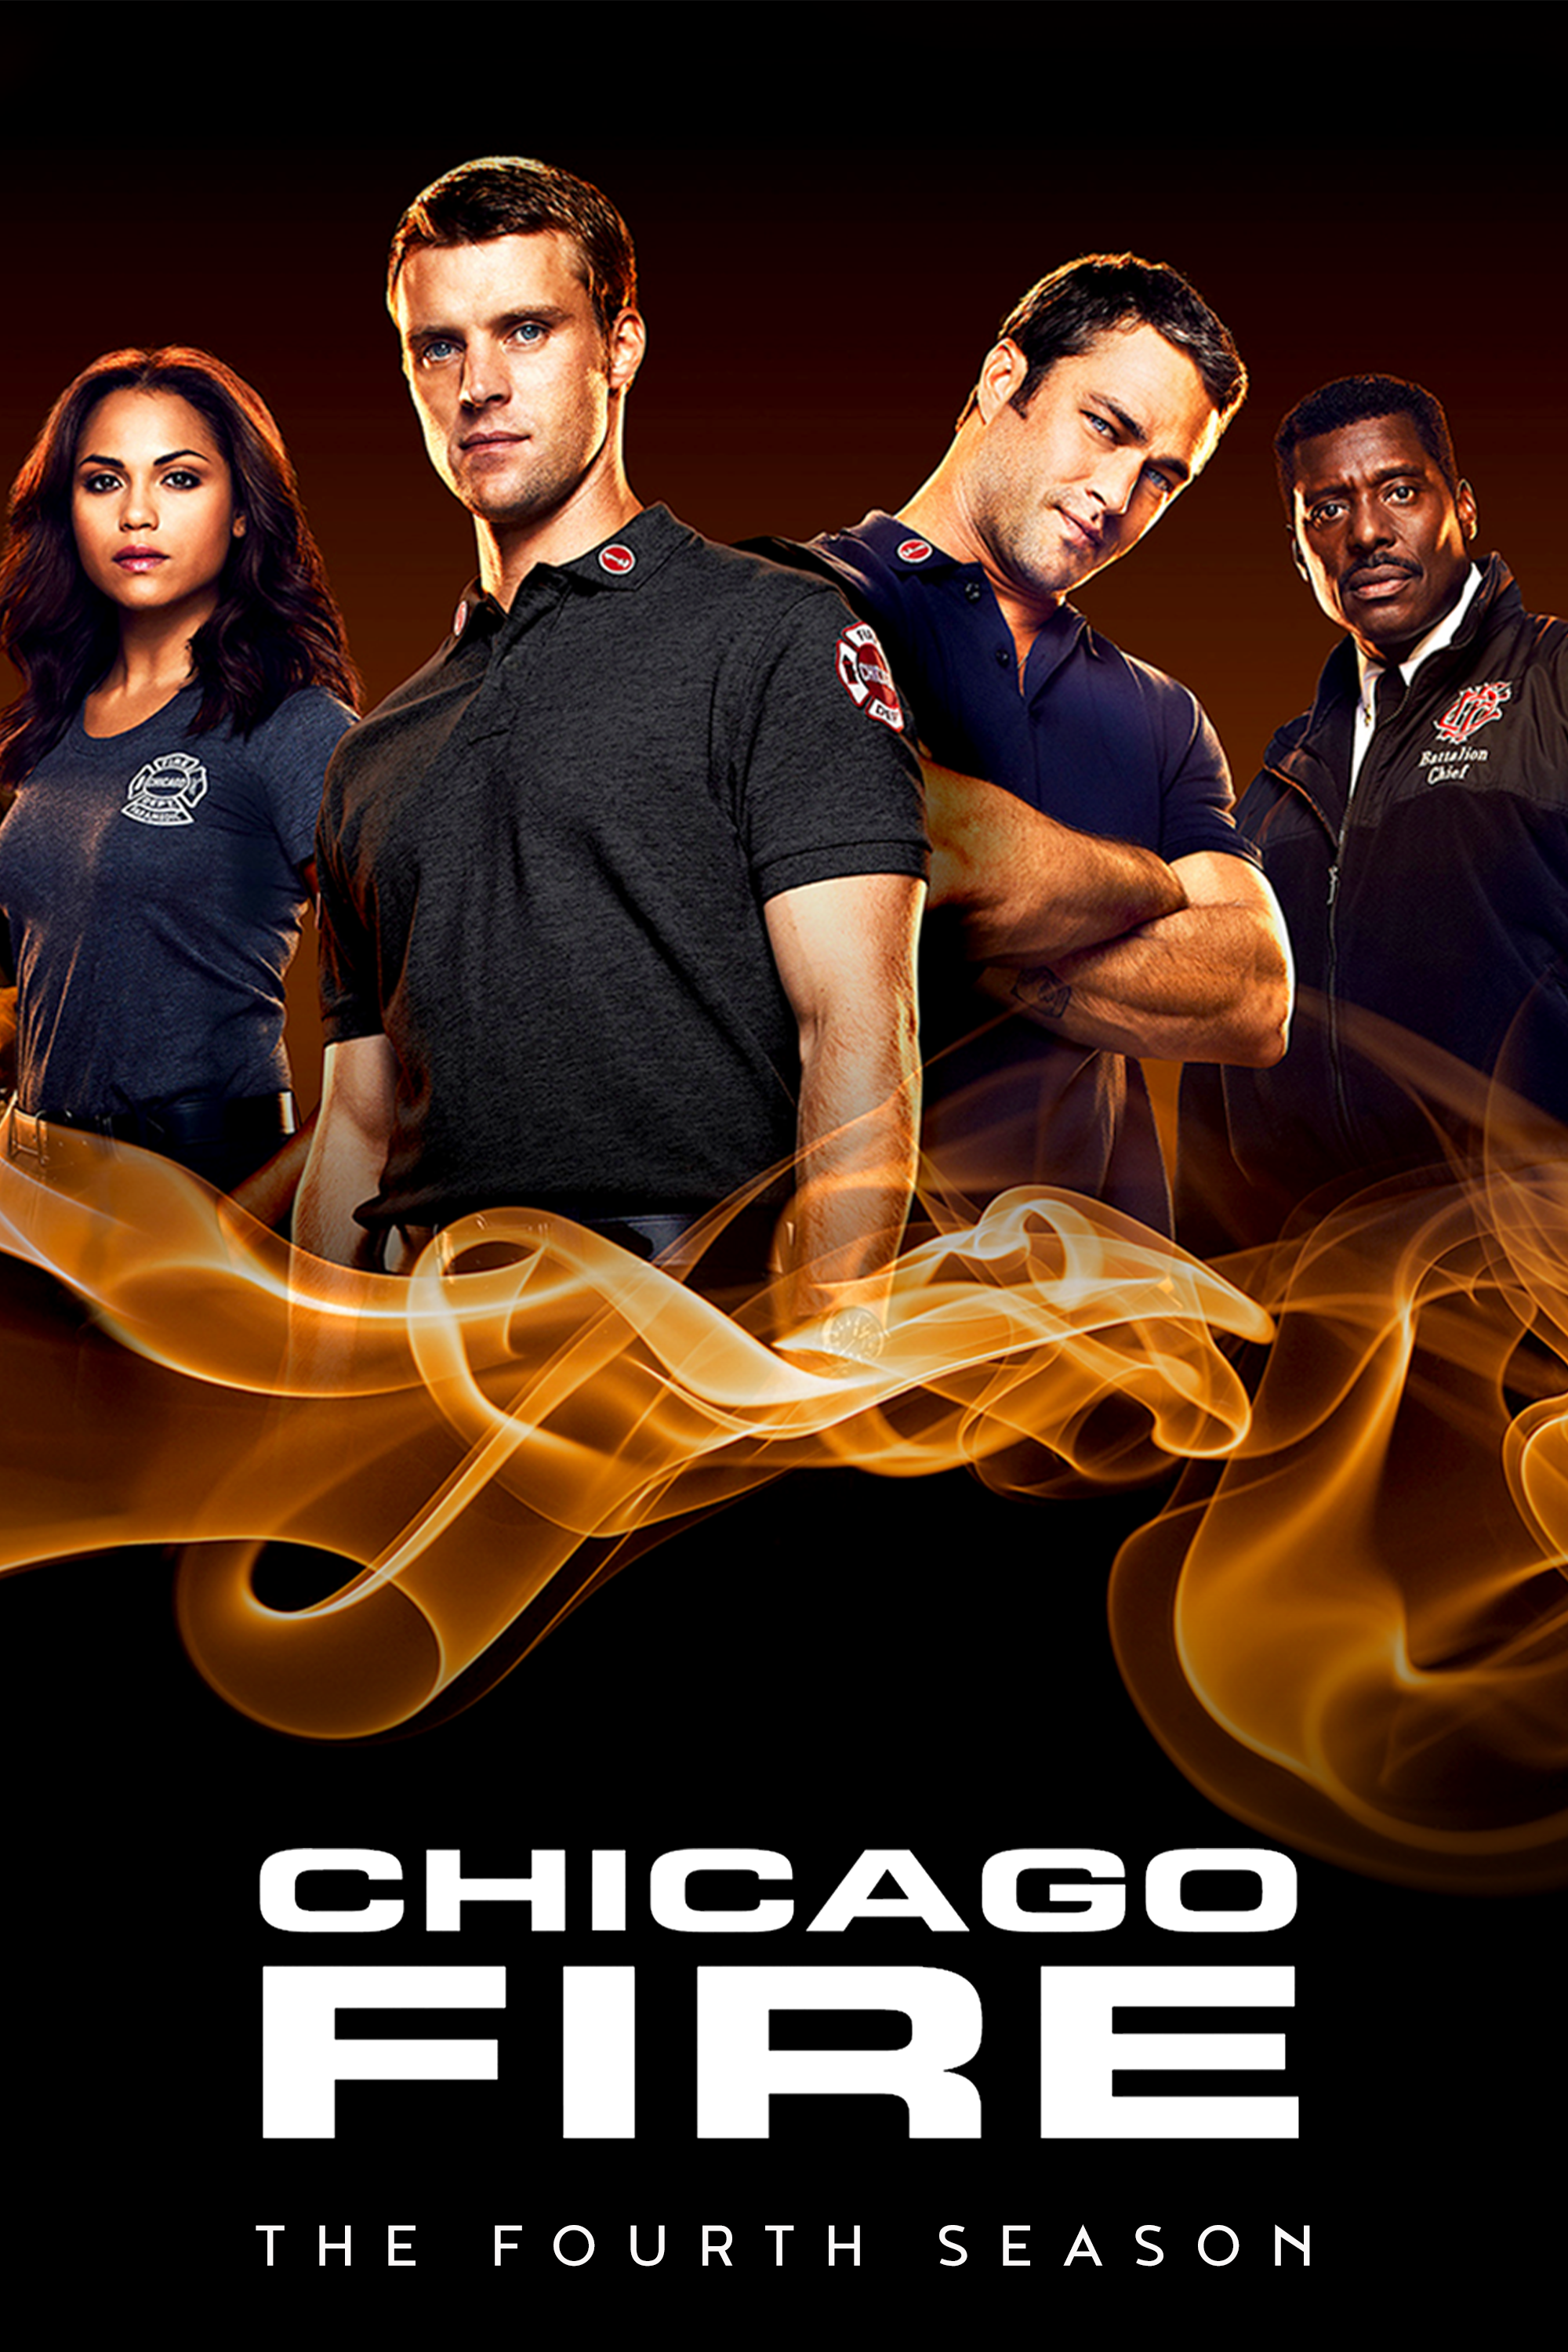 ดูหนังออนไลน์ Chicago Fire Season 4 EP.1 ชิคาโก้ ไฟร์ หน่วยดับเพลิงท้านรก ซีซั่นที่ 4 ตอนที่ 1